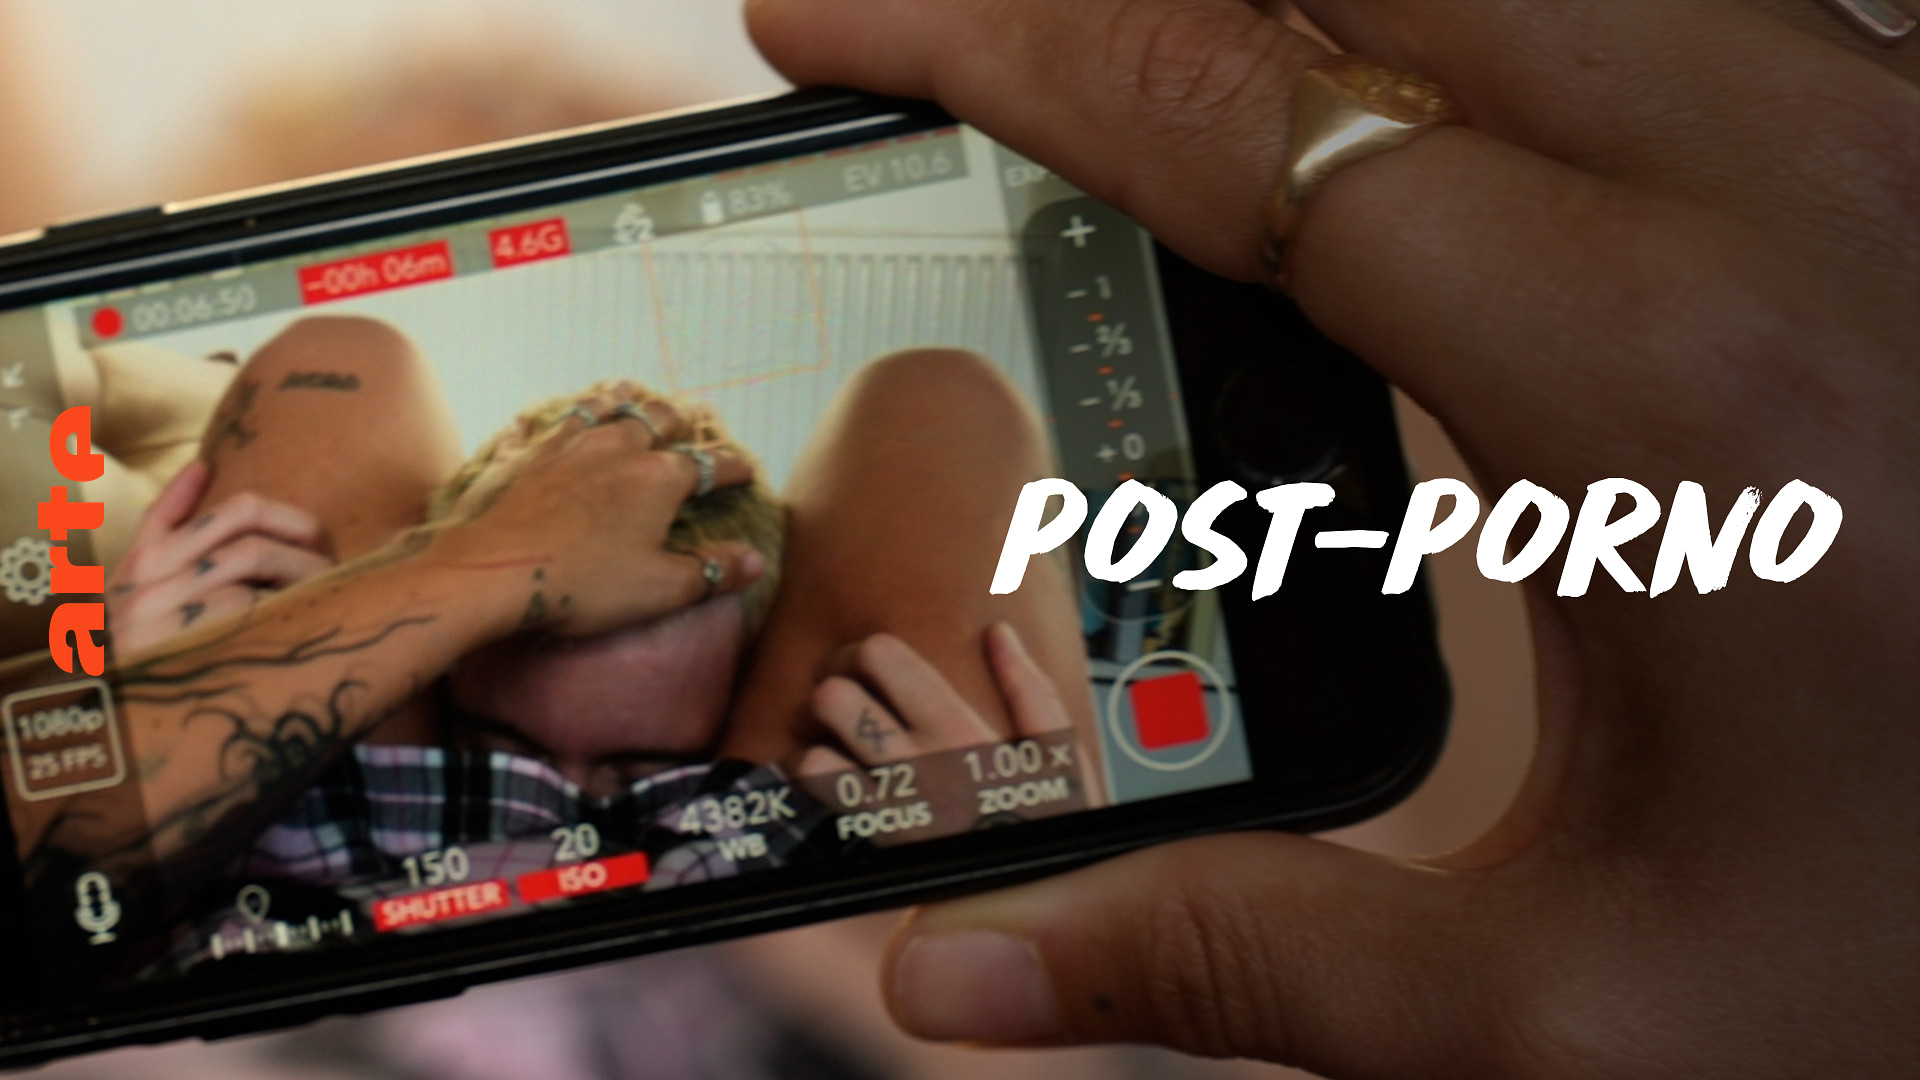 Post-Porn erweckt neue Fantasien?